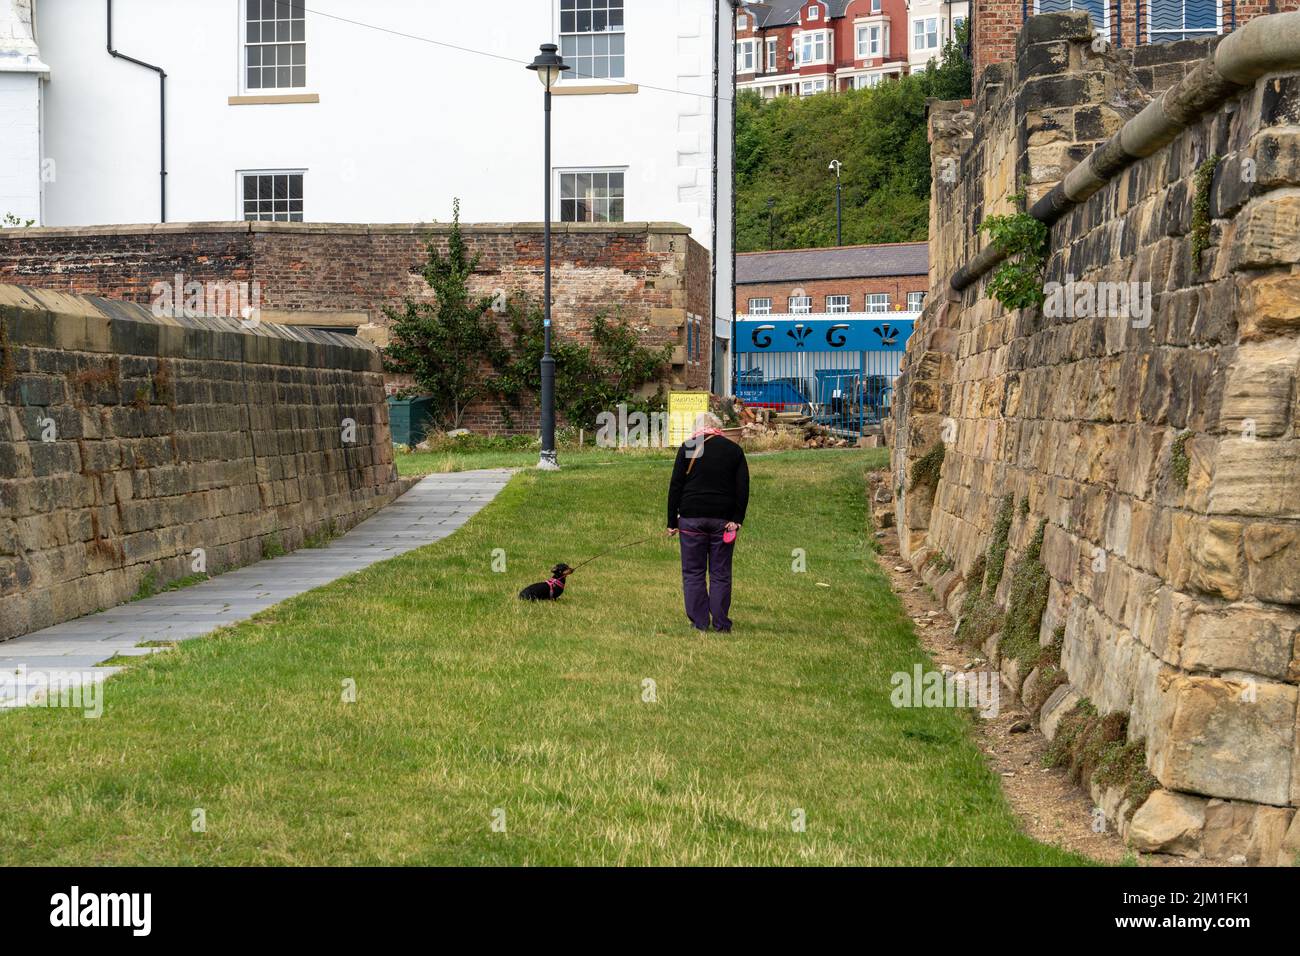 Una donna cammina il suo cane tra le antiche mura del XVII secolo Clifford's Fort a Fish Quay a North Shields, North Tyneside, Regno Unito. Foto Stock